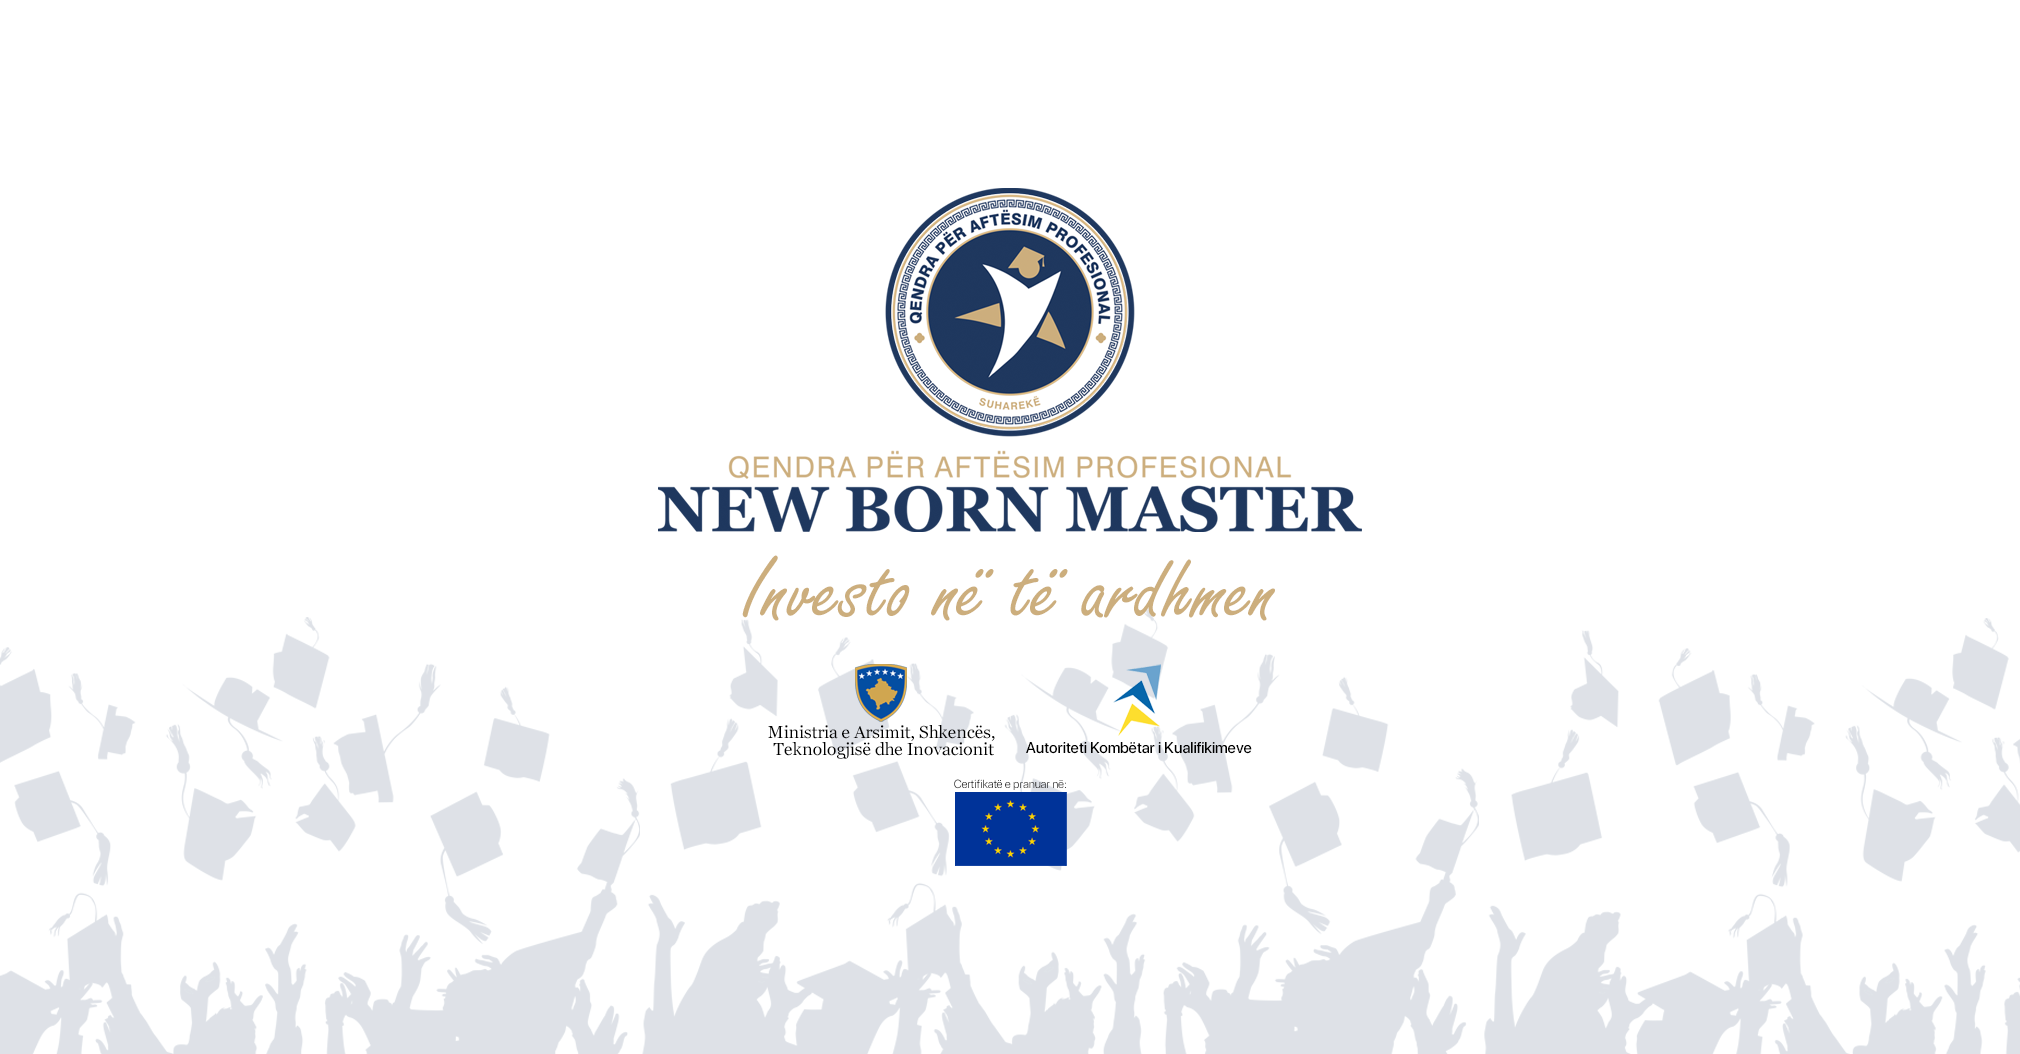 Regjistrohu në Qendrën për Aftësim Profesional – NEW BORN MASTER dhe merr certifikatë të pranuar në shtetet Europiane 🇪🇺